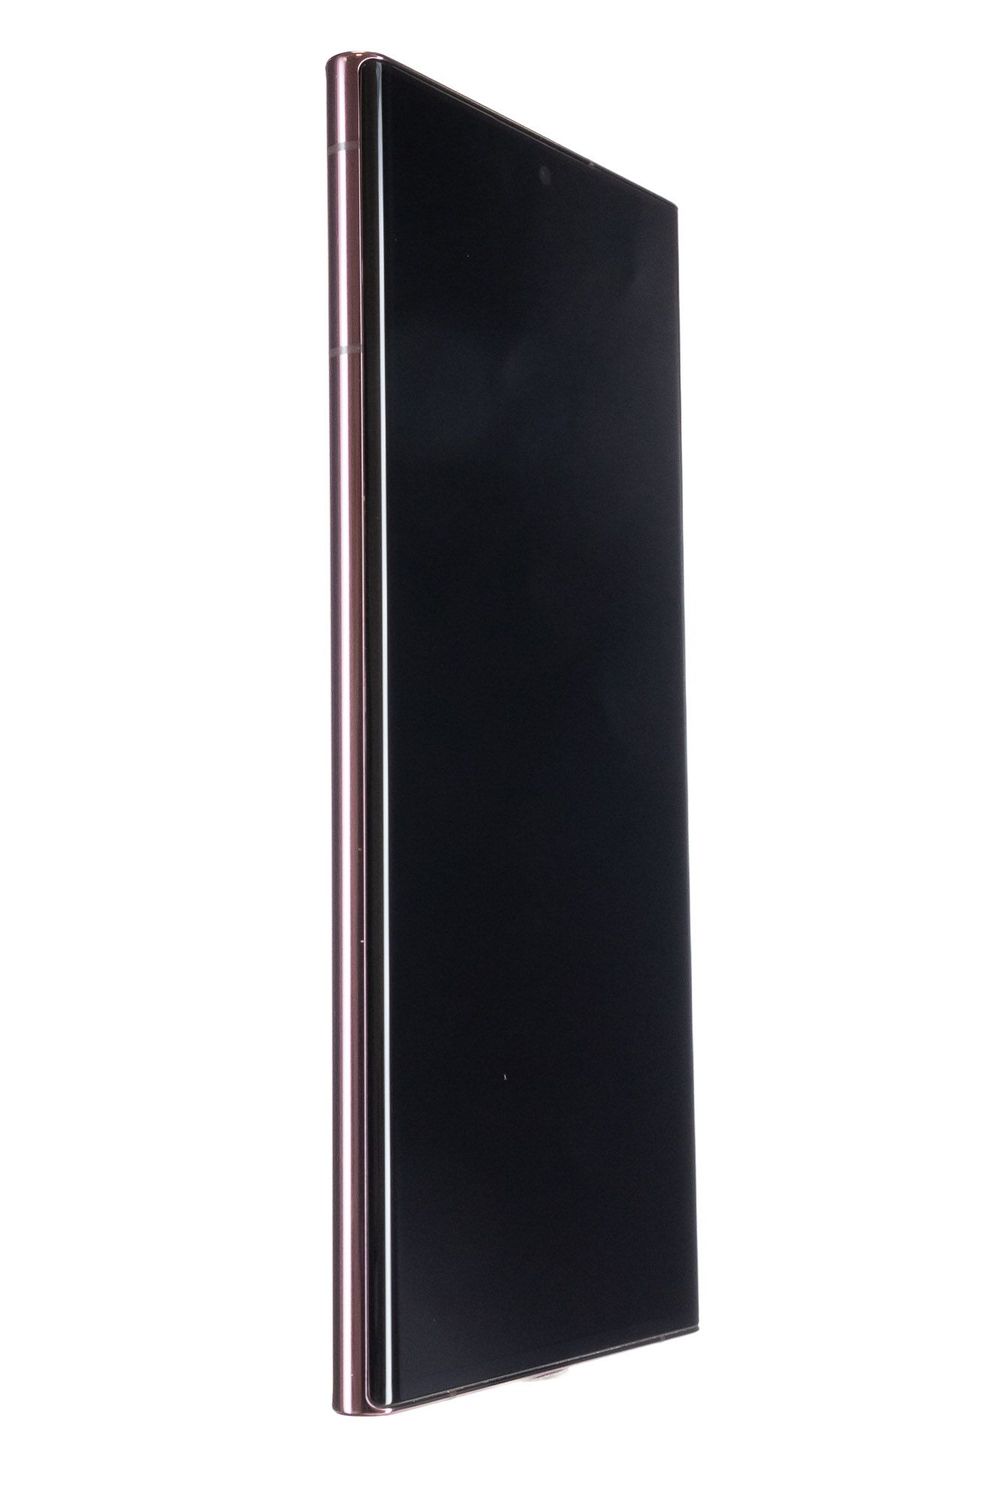 Κινητό τηλέφωνο Samsung Galaxy S22 Ultra 5G, Burgundy, 128 GB, Ca Nou